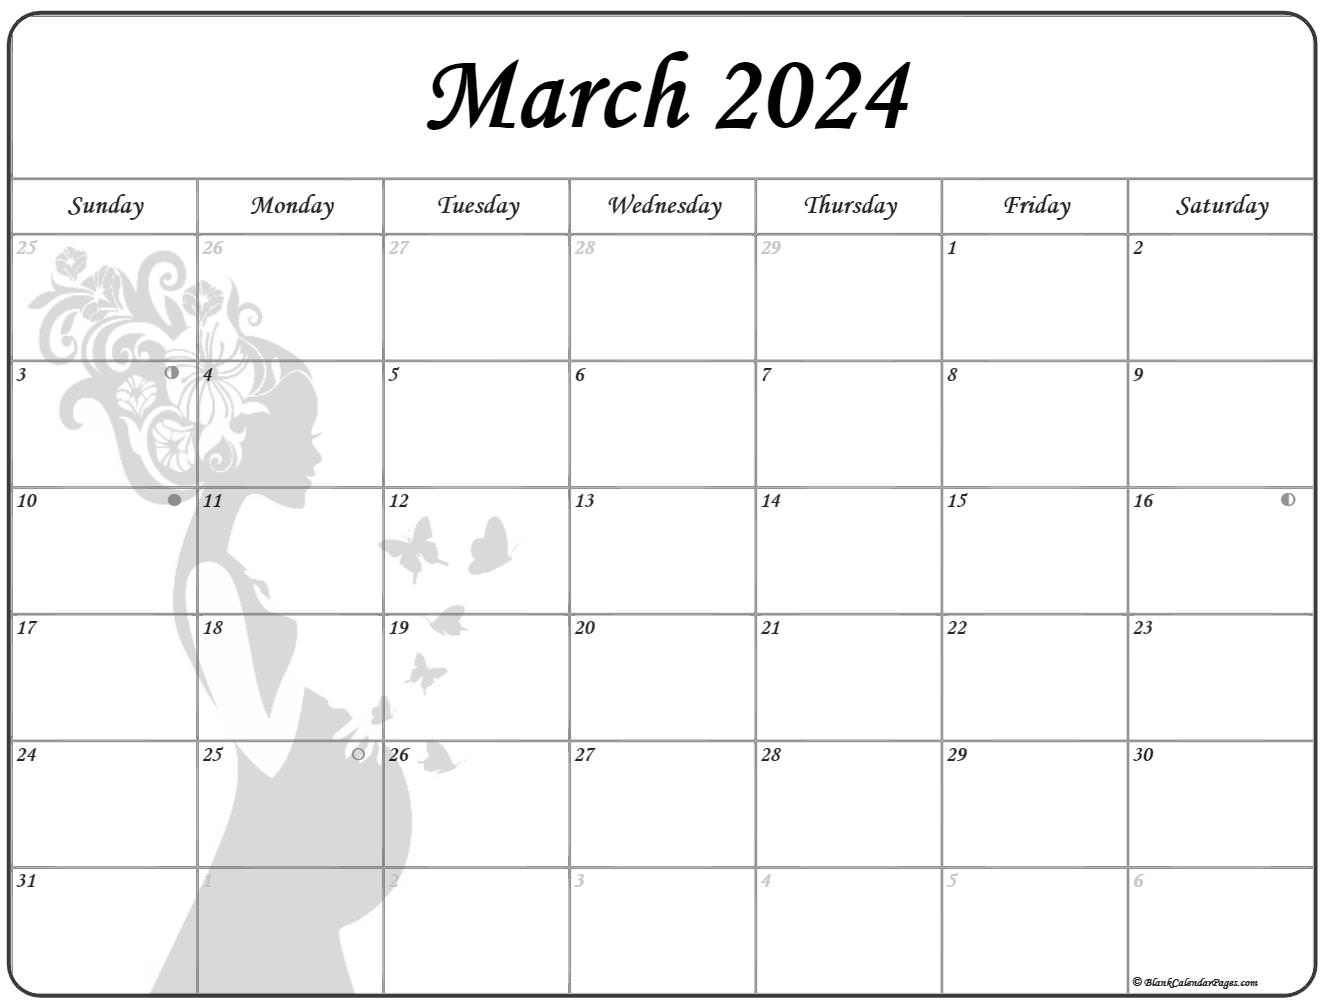 march-2023-calendar-australia-get-calender-2023-update